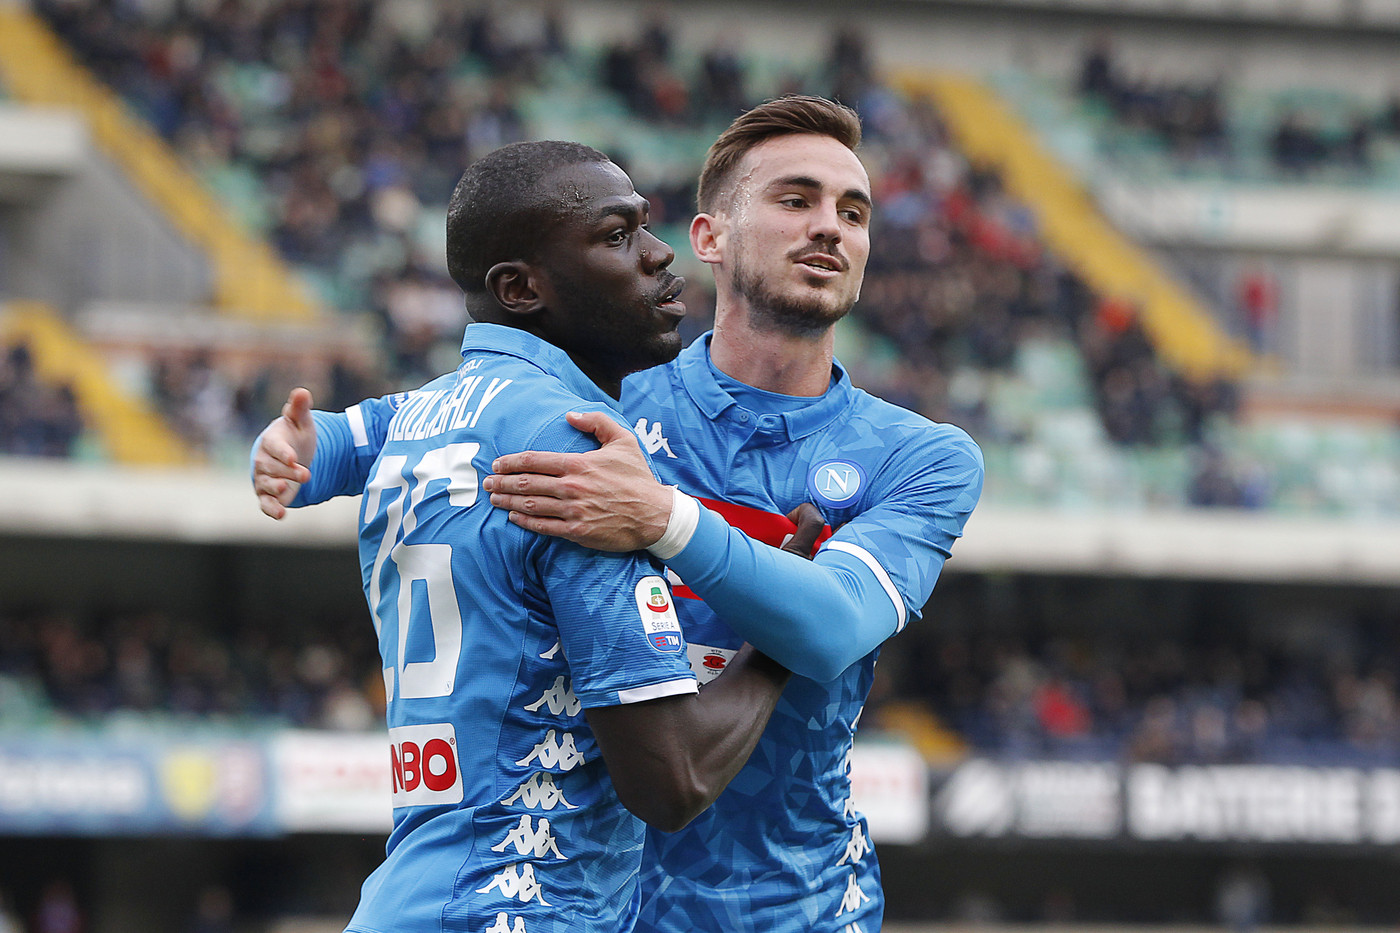 Serie A, Chievo-Napoli 1-3 | Il fotoracconto